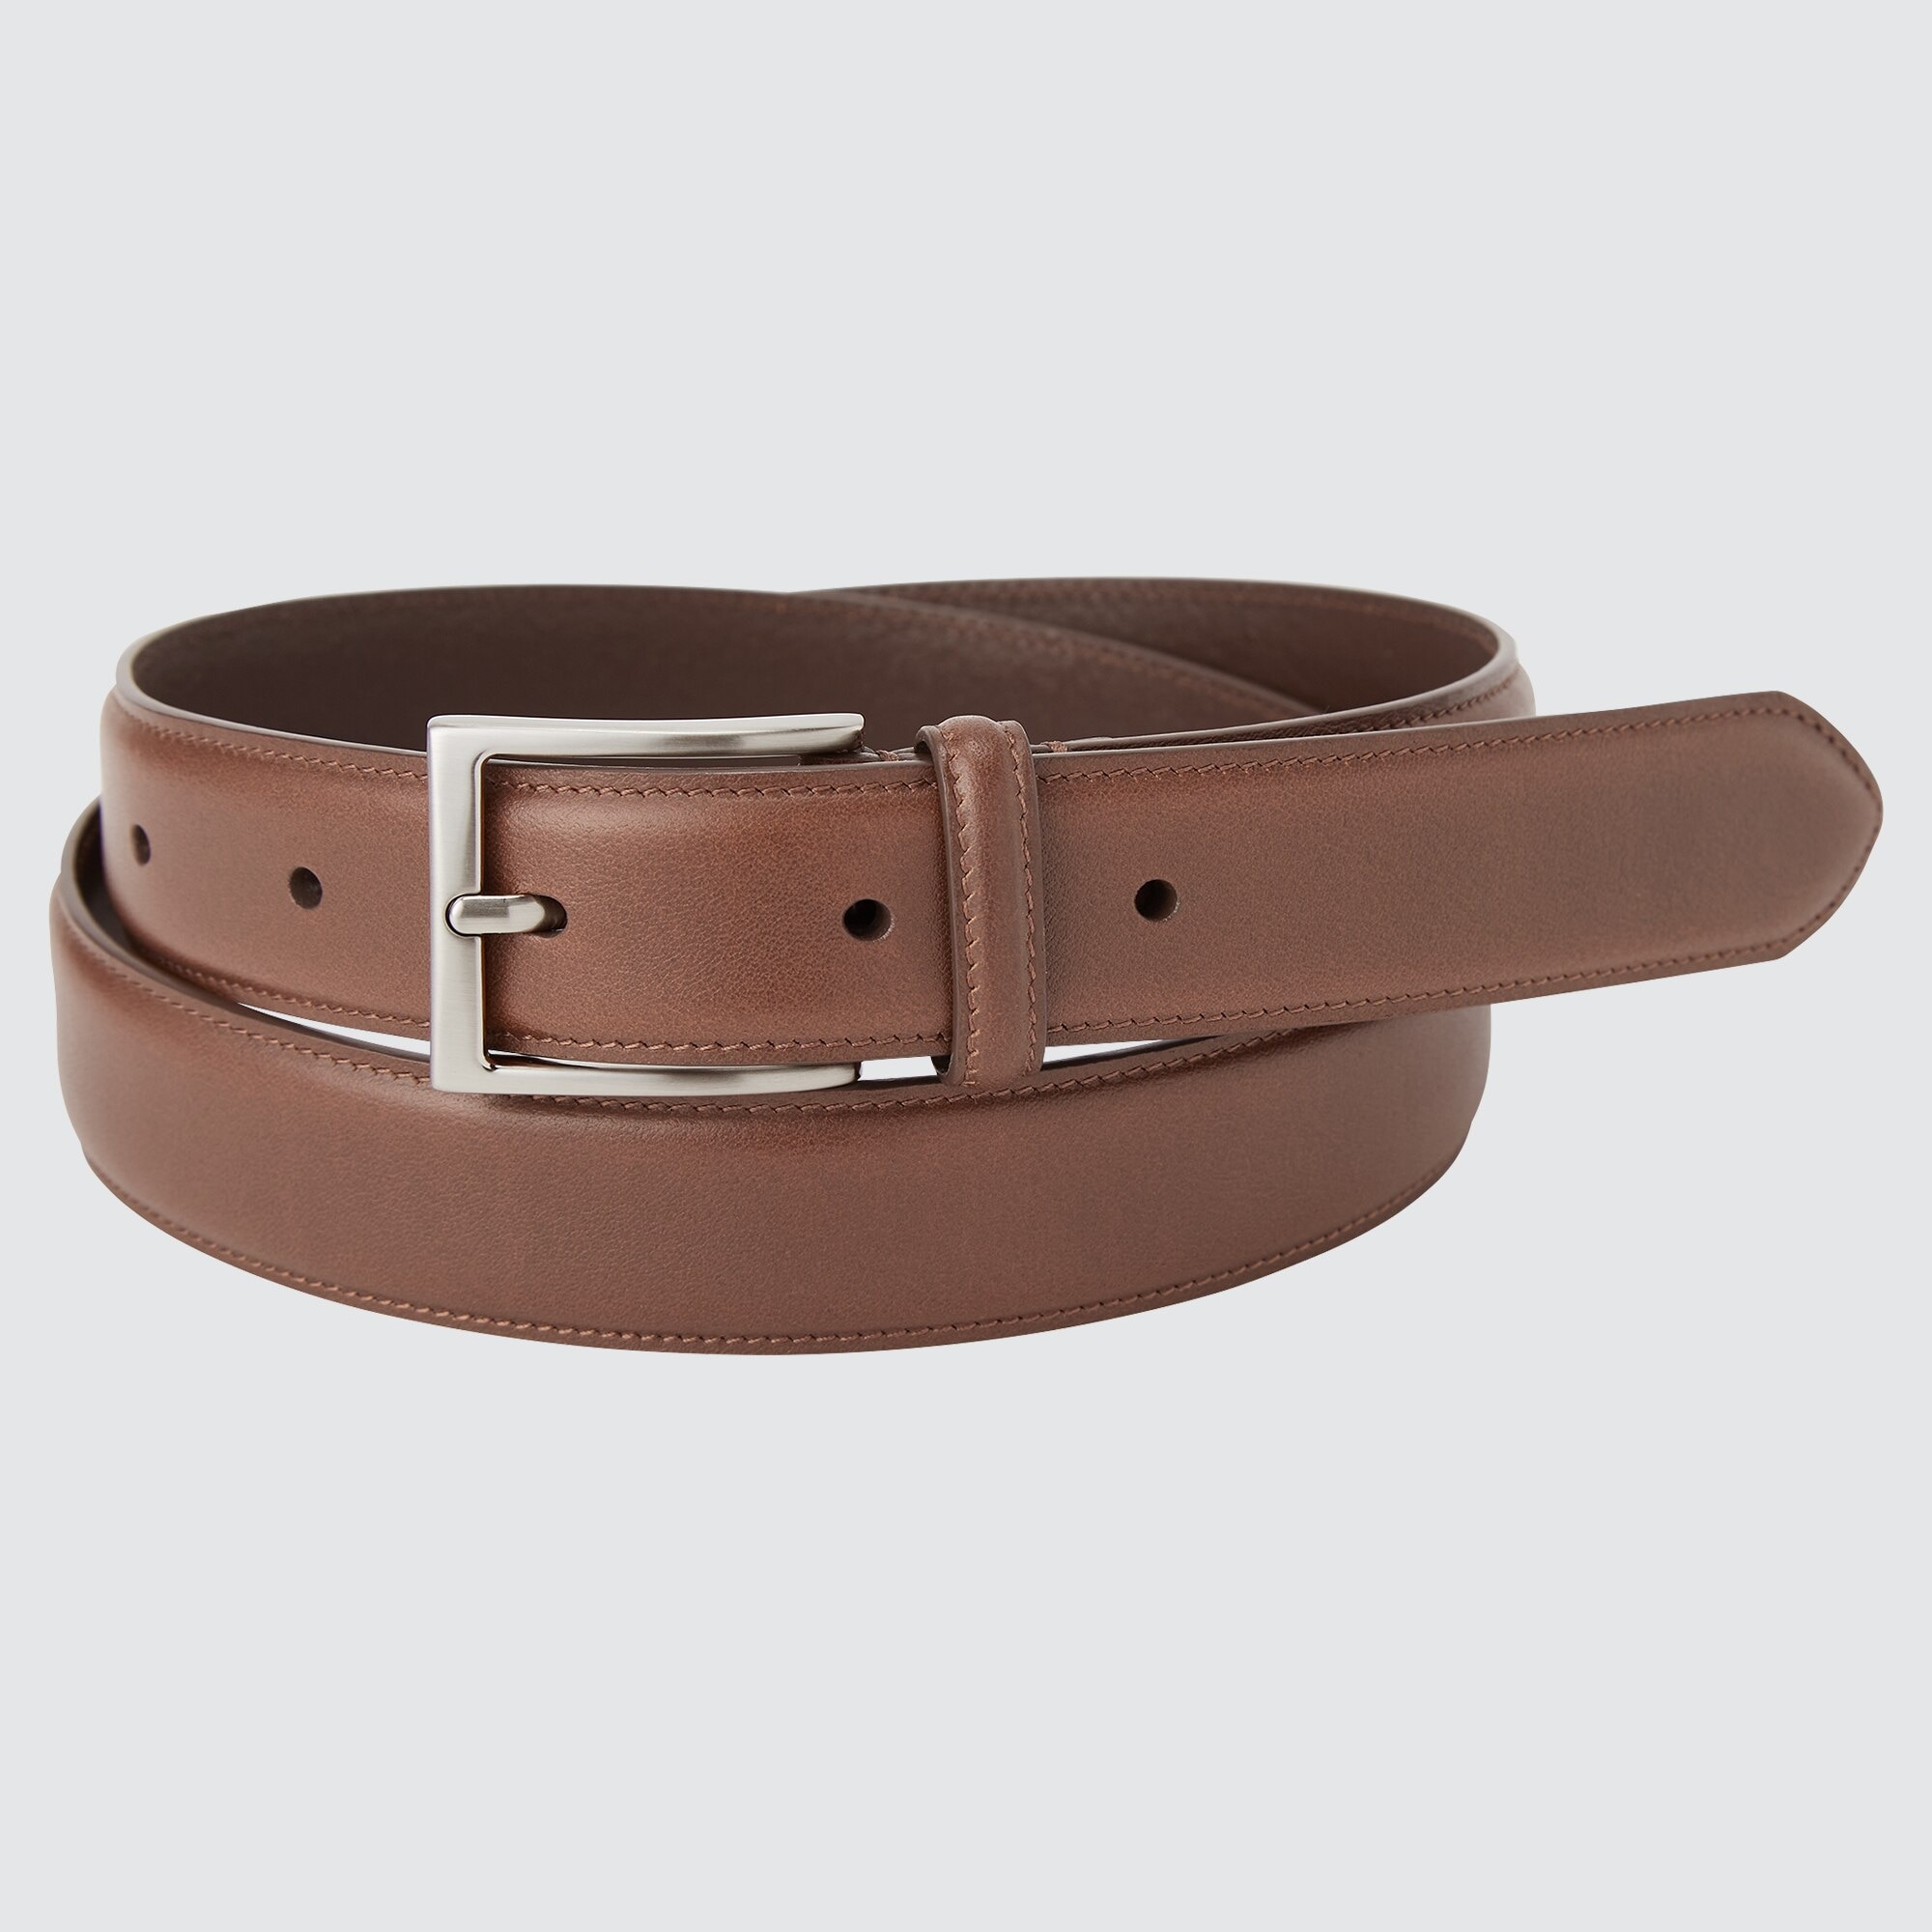 UNIQLO Italian Leather Stitched Belt | StyleHint